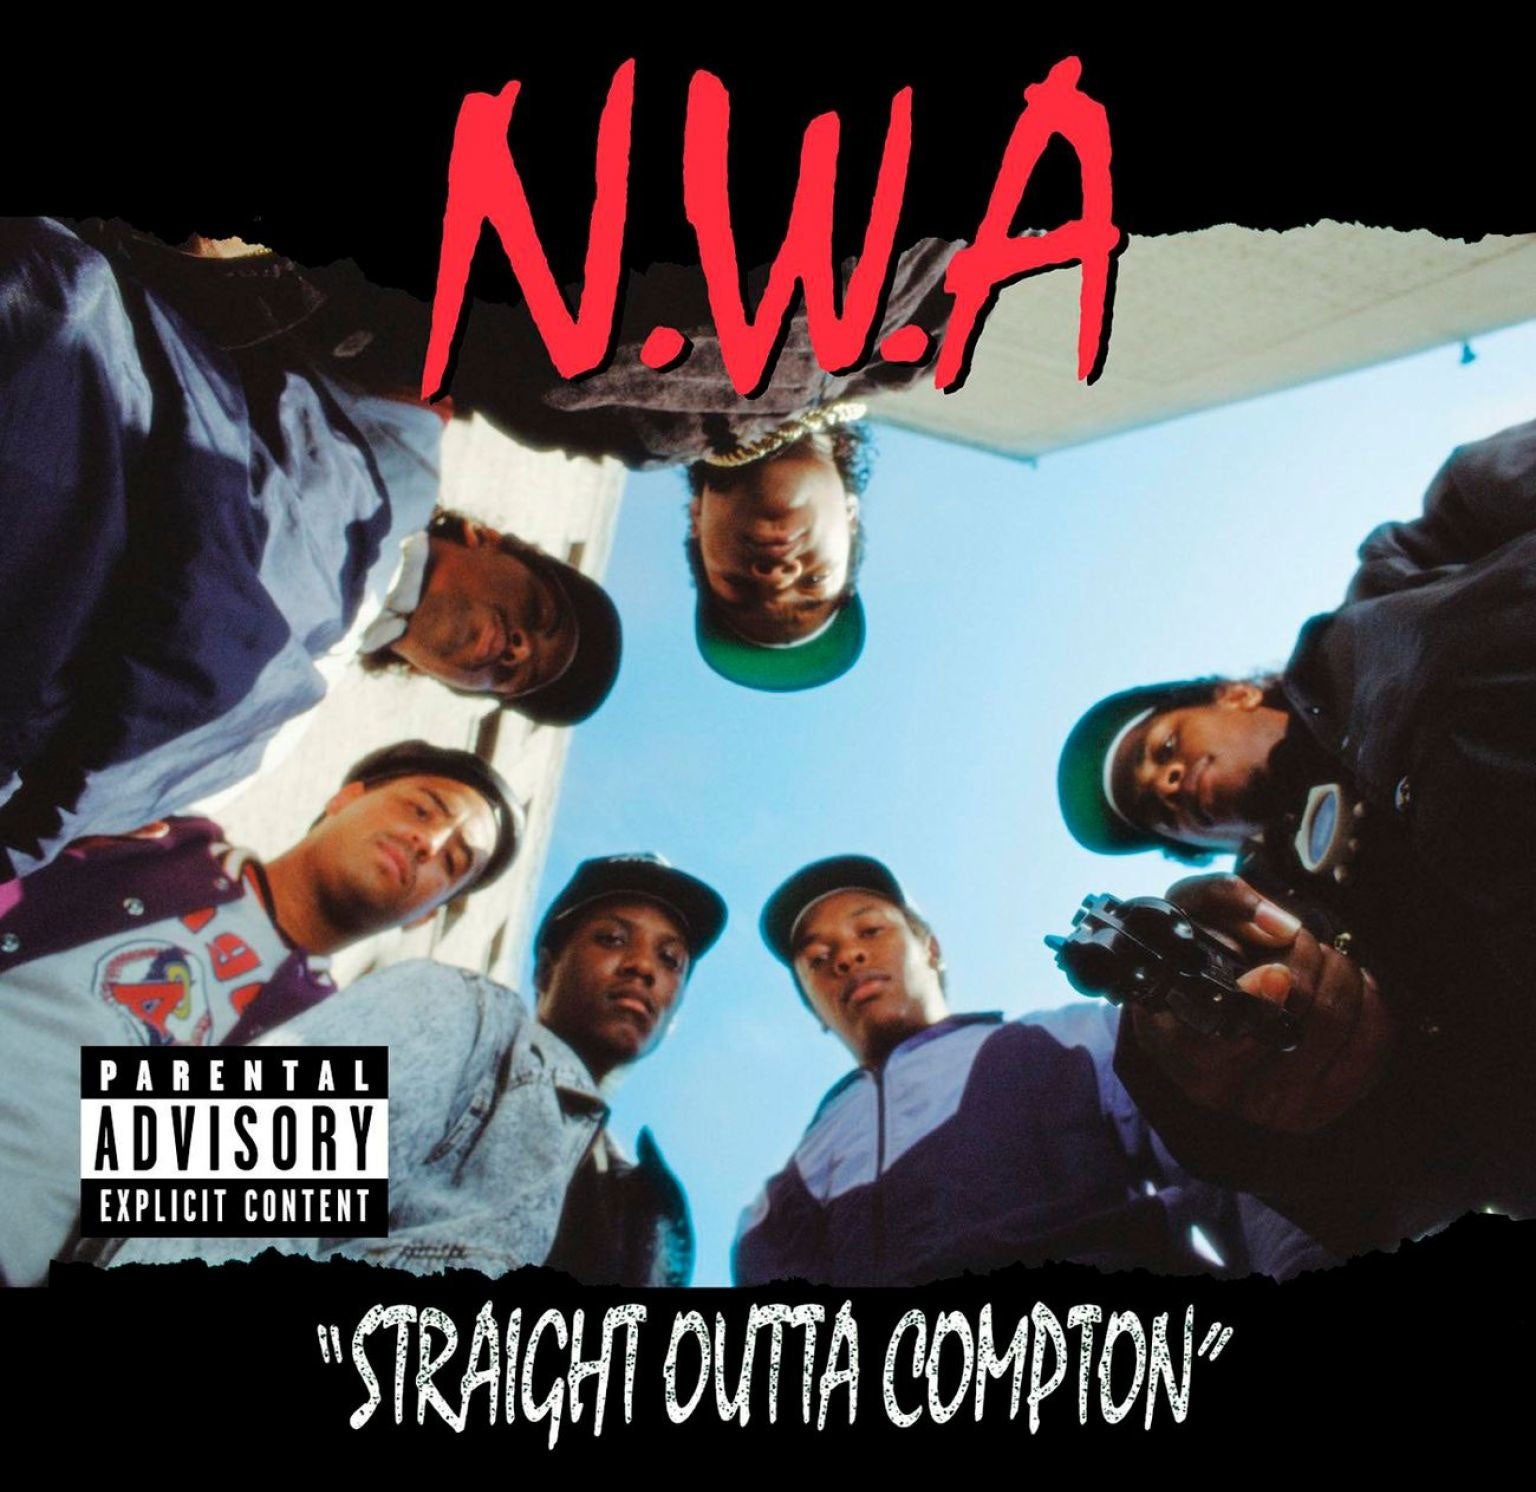 NWA’s debut studio album, ‘Straight Outta Compton’, was released in 1988